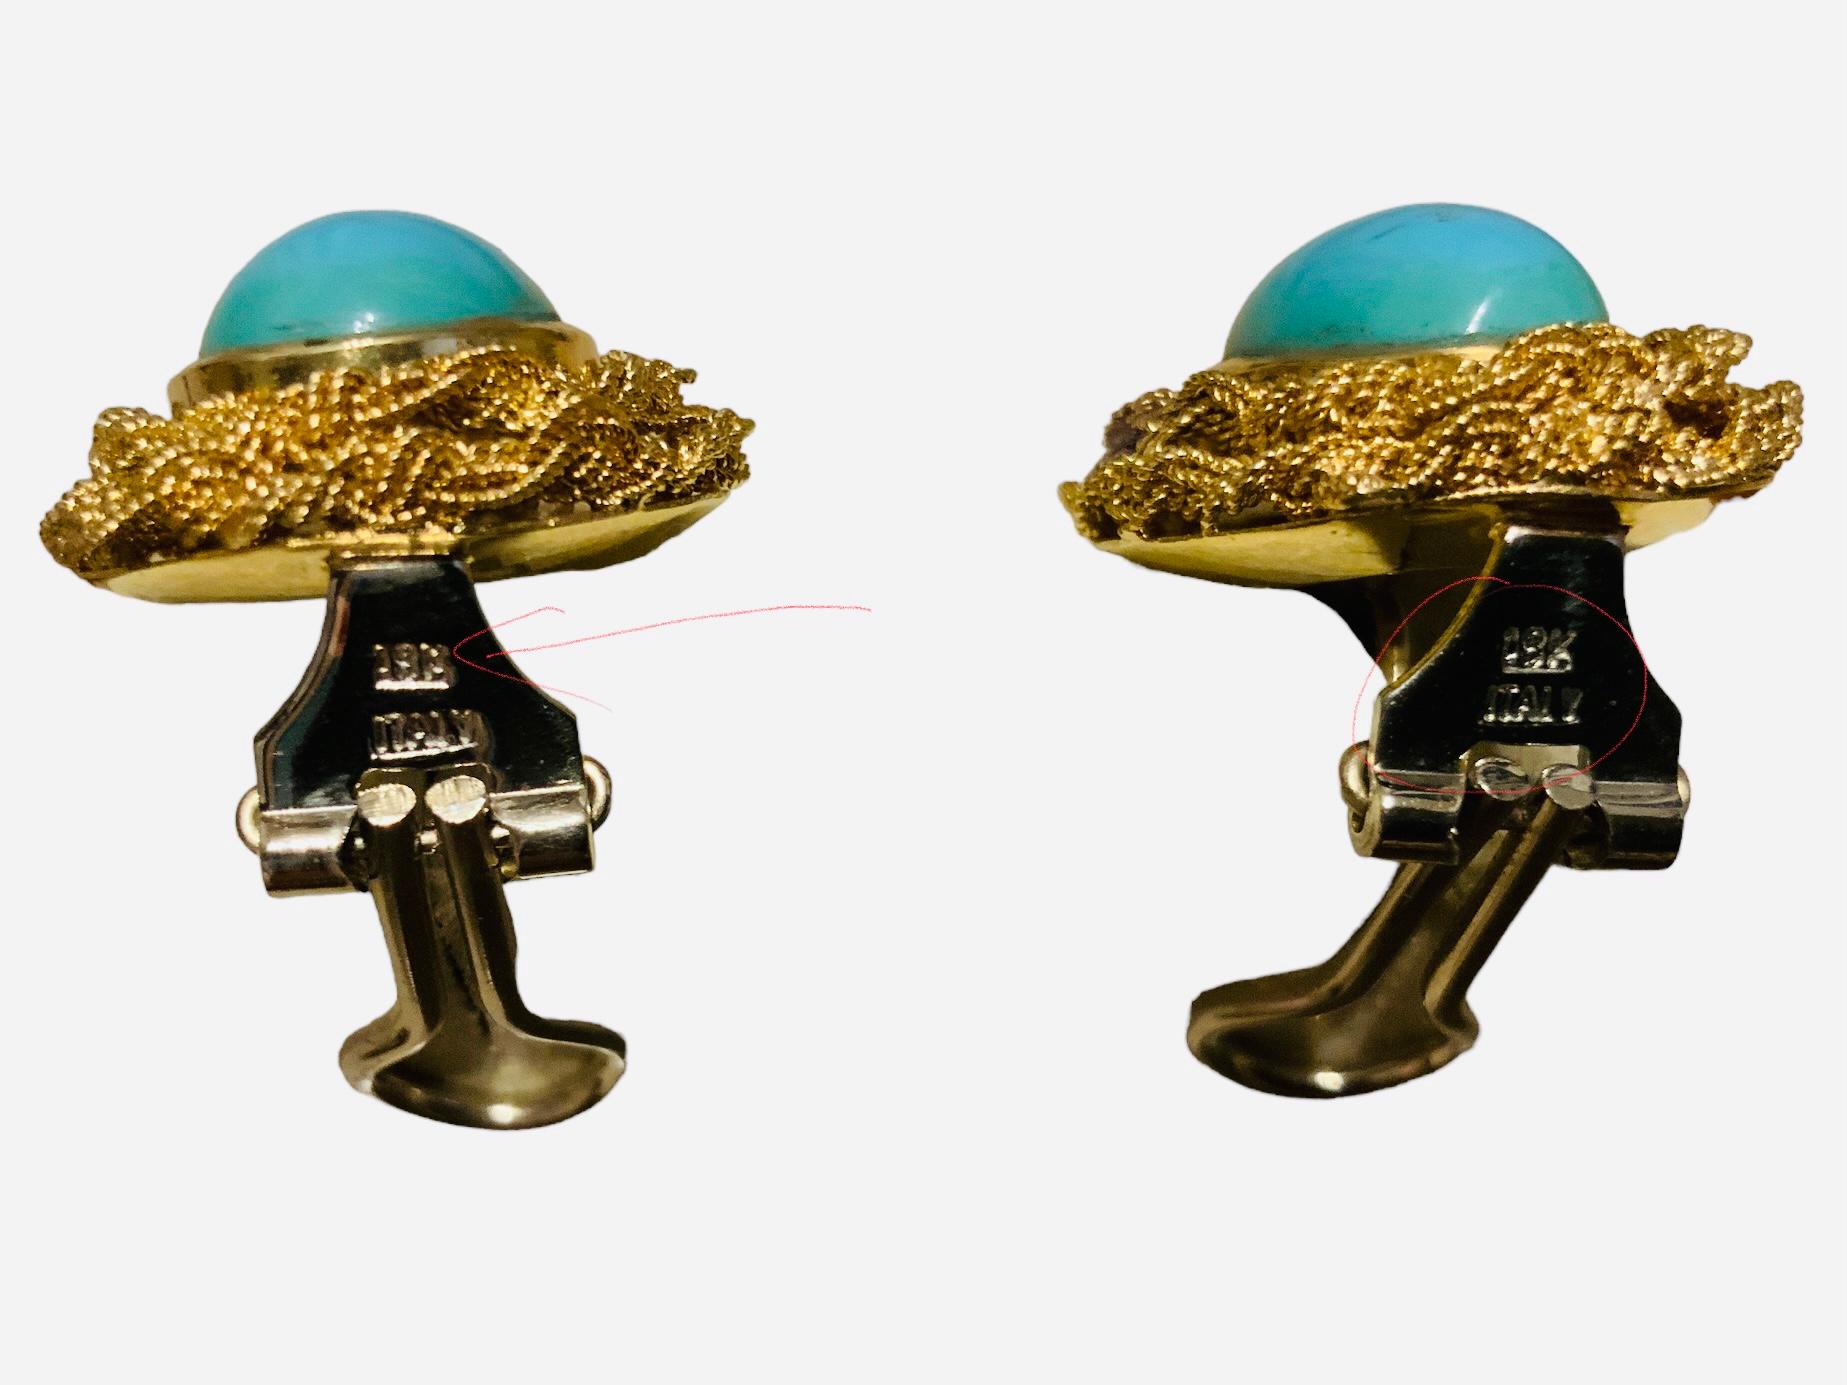 Dies ist eine italienische 18K Gelbgold und Türkis Paar Ohrringe. Es zeigt einen länglichen, länglich geformten Türkis-Cabochon, der in eine goldene Lünette gefasst und von einem goldenen Kranz aus doppelt geflochtenen Seilen umgeben ist. Die